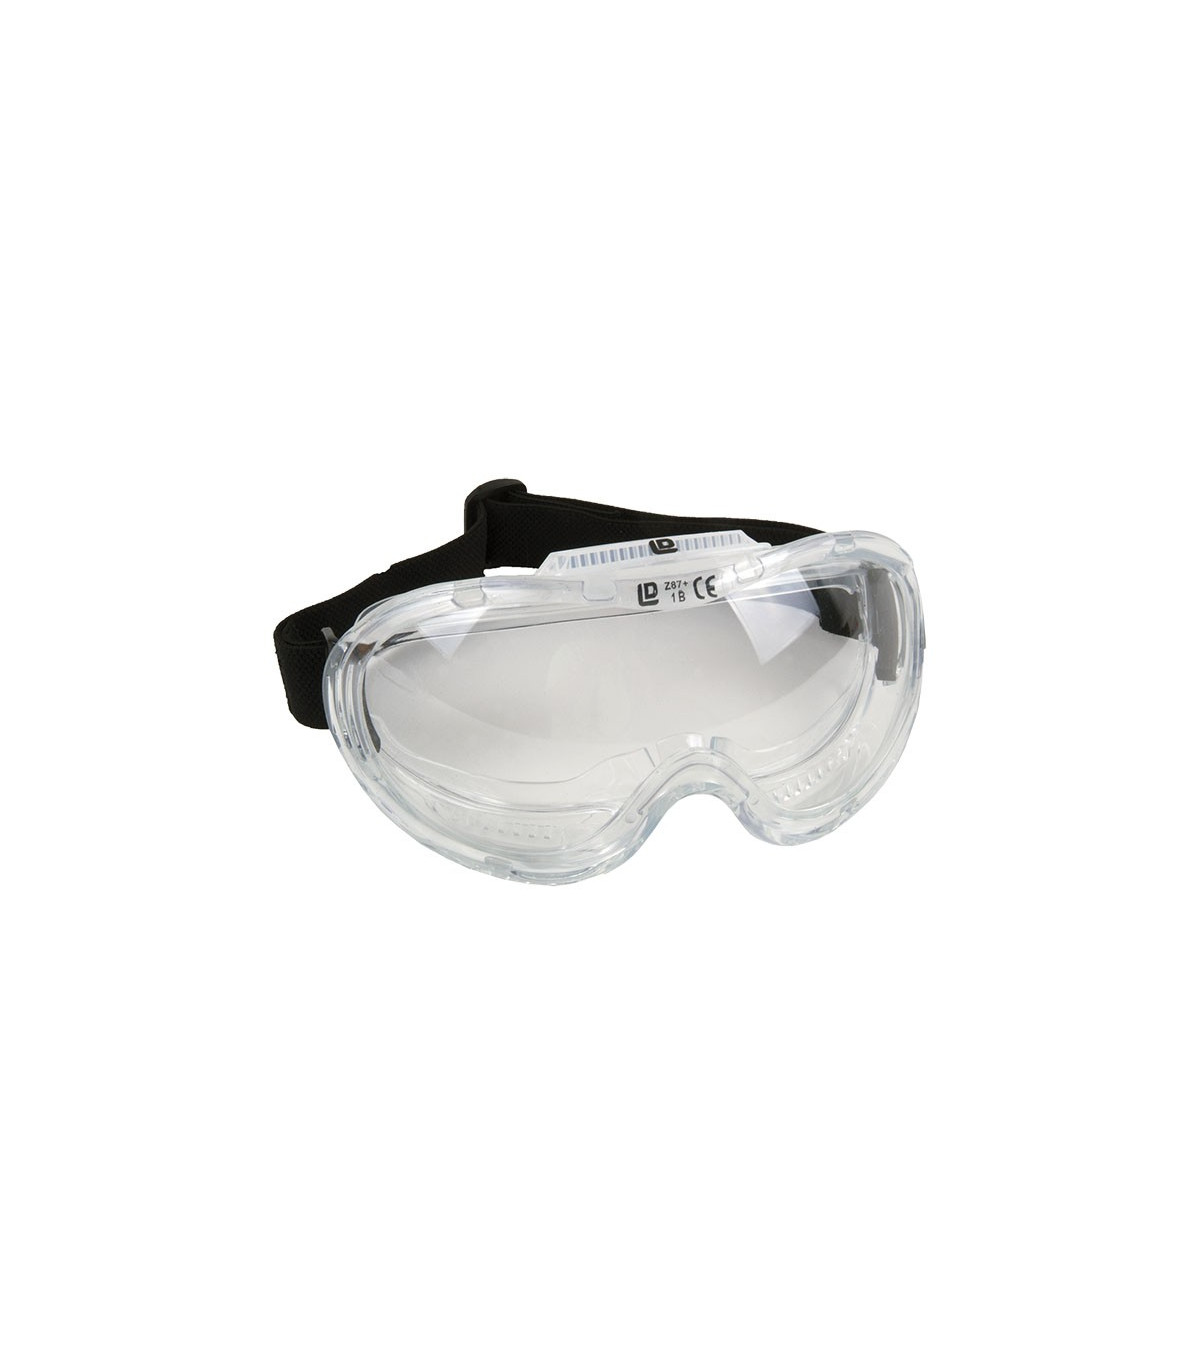 Gafas Seguridad Visión Panorámica, transparentes con ajuste